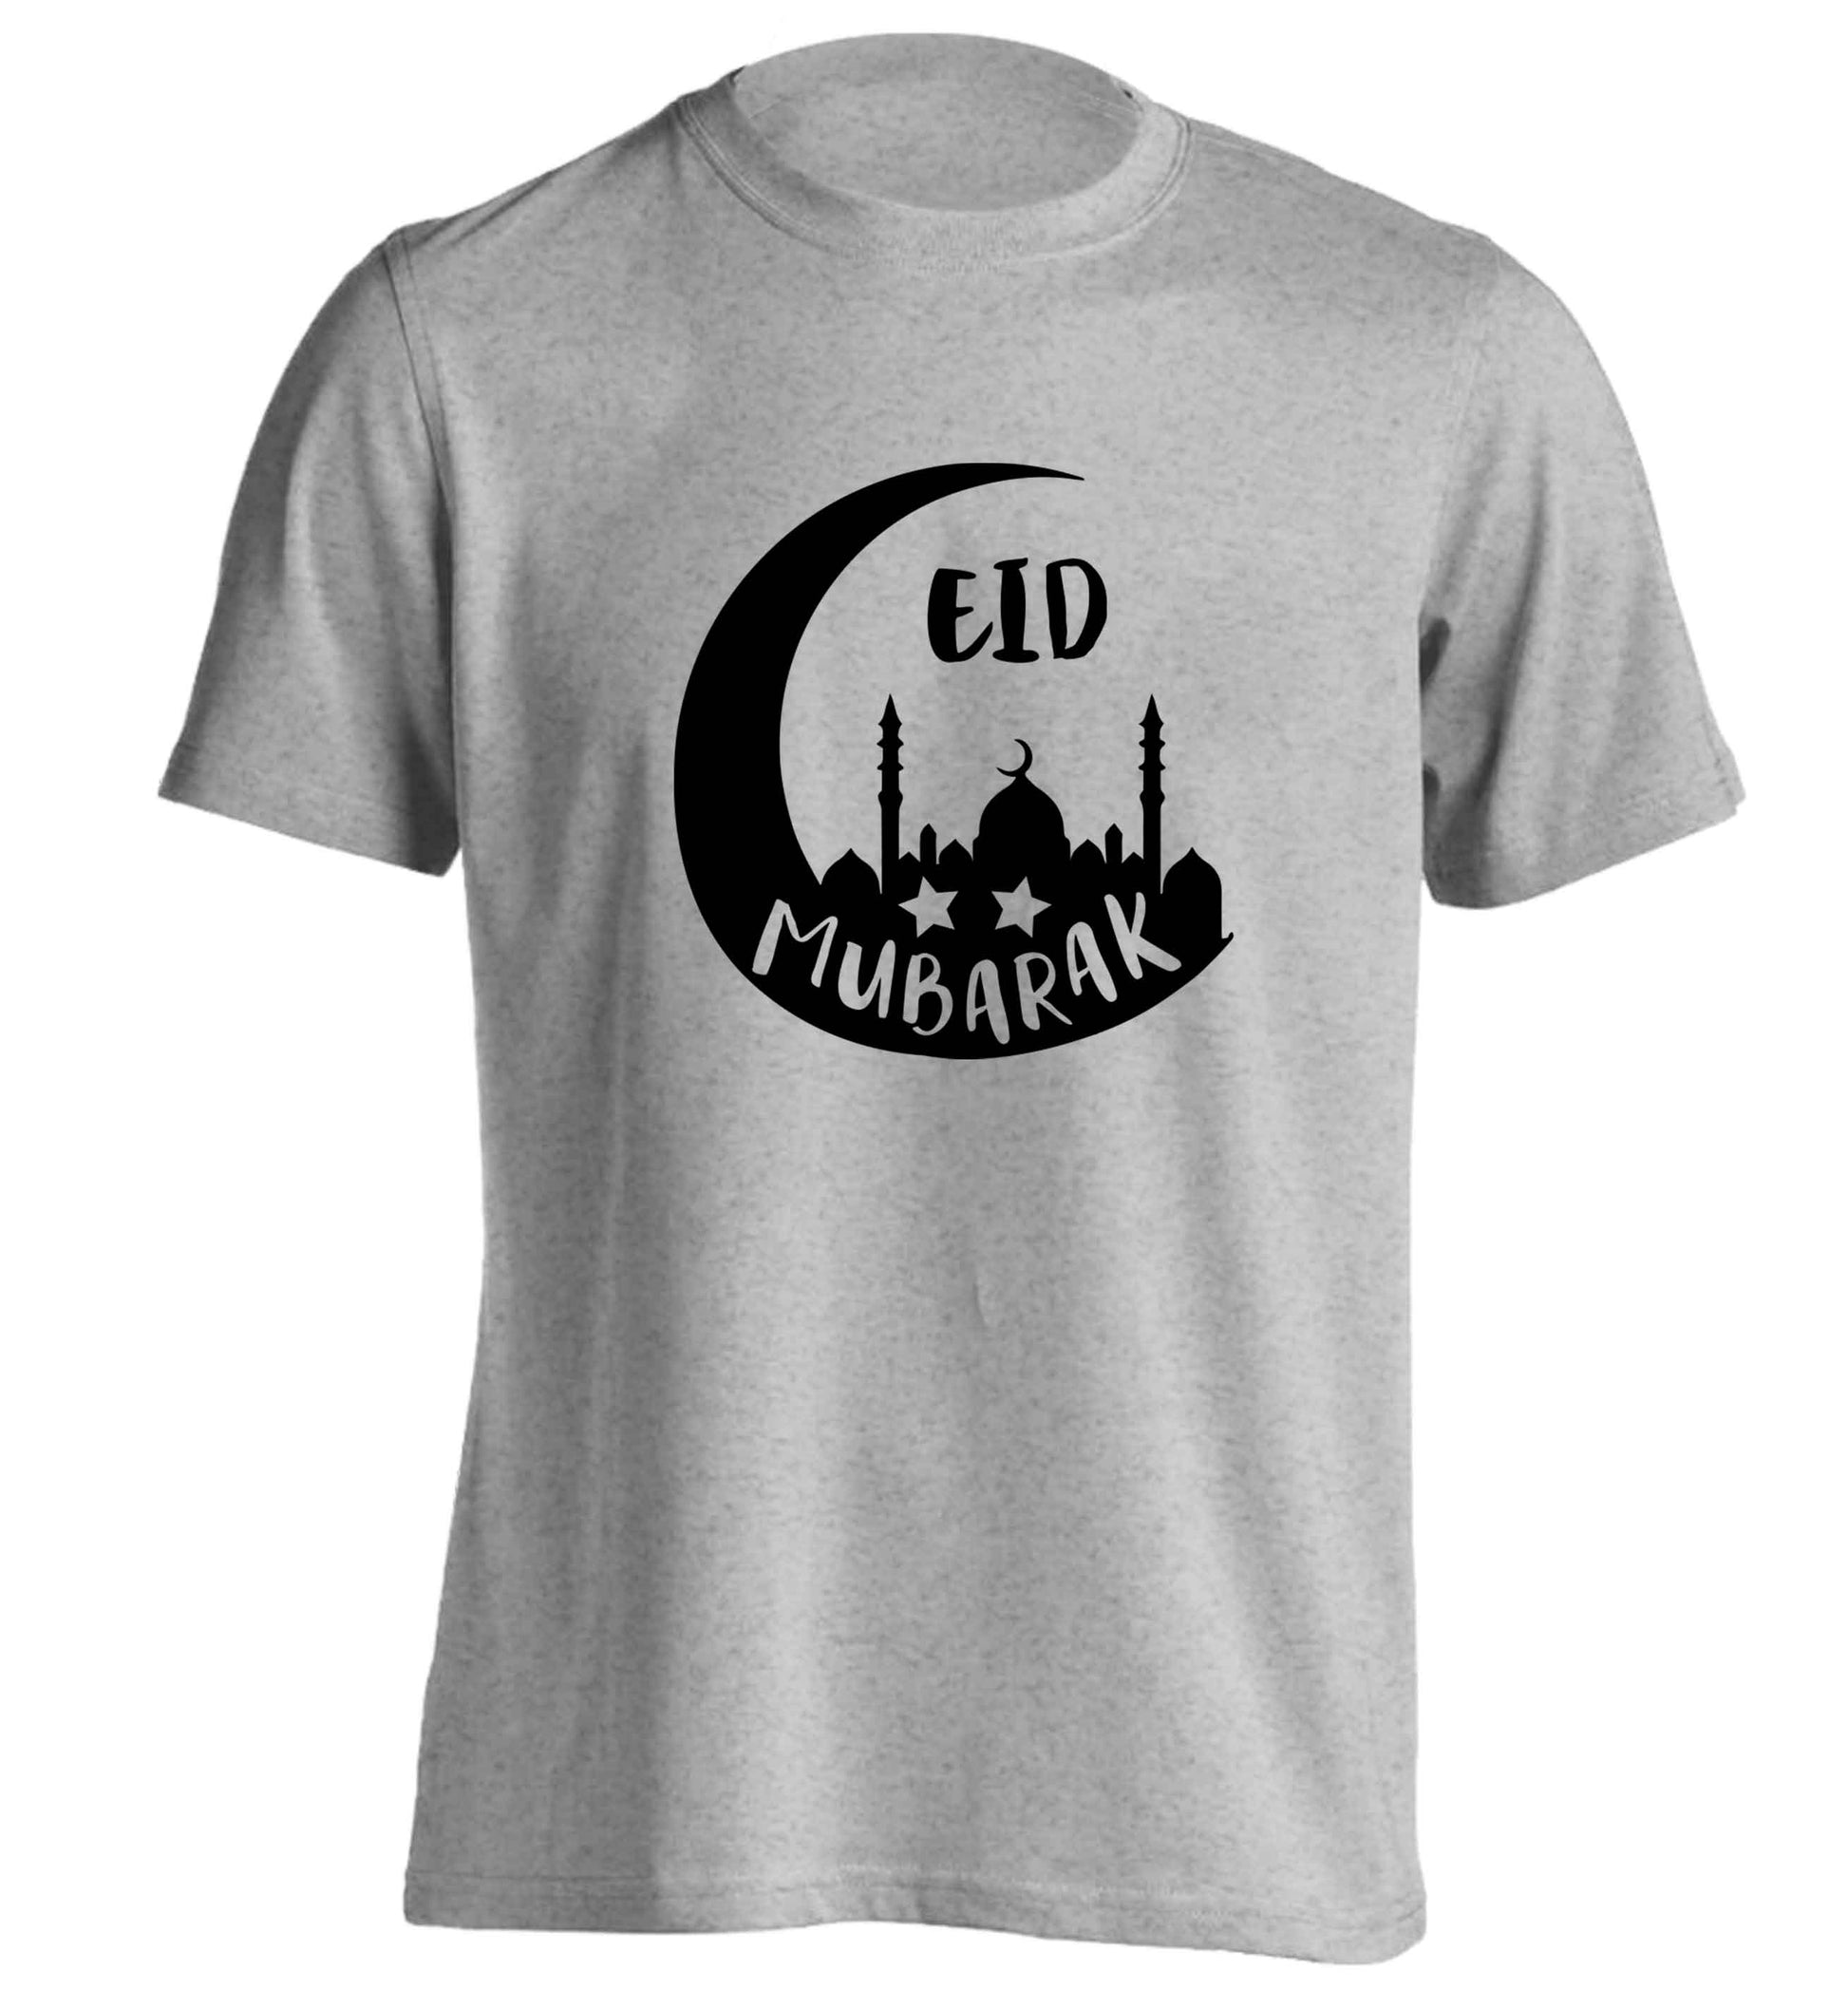 Eid mubarak adults unisex grey Tshirt 2XL